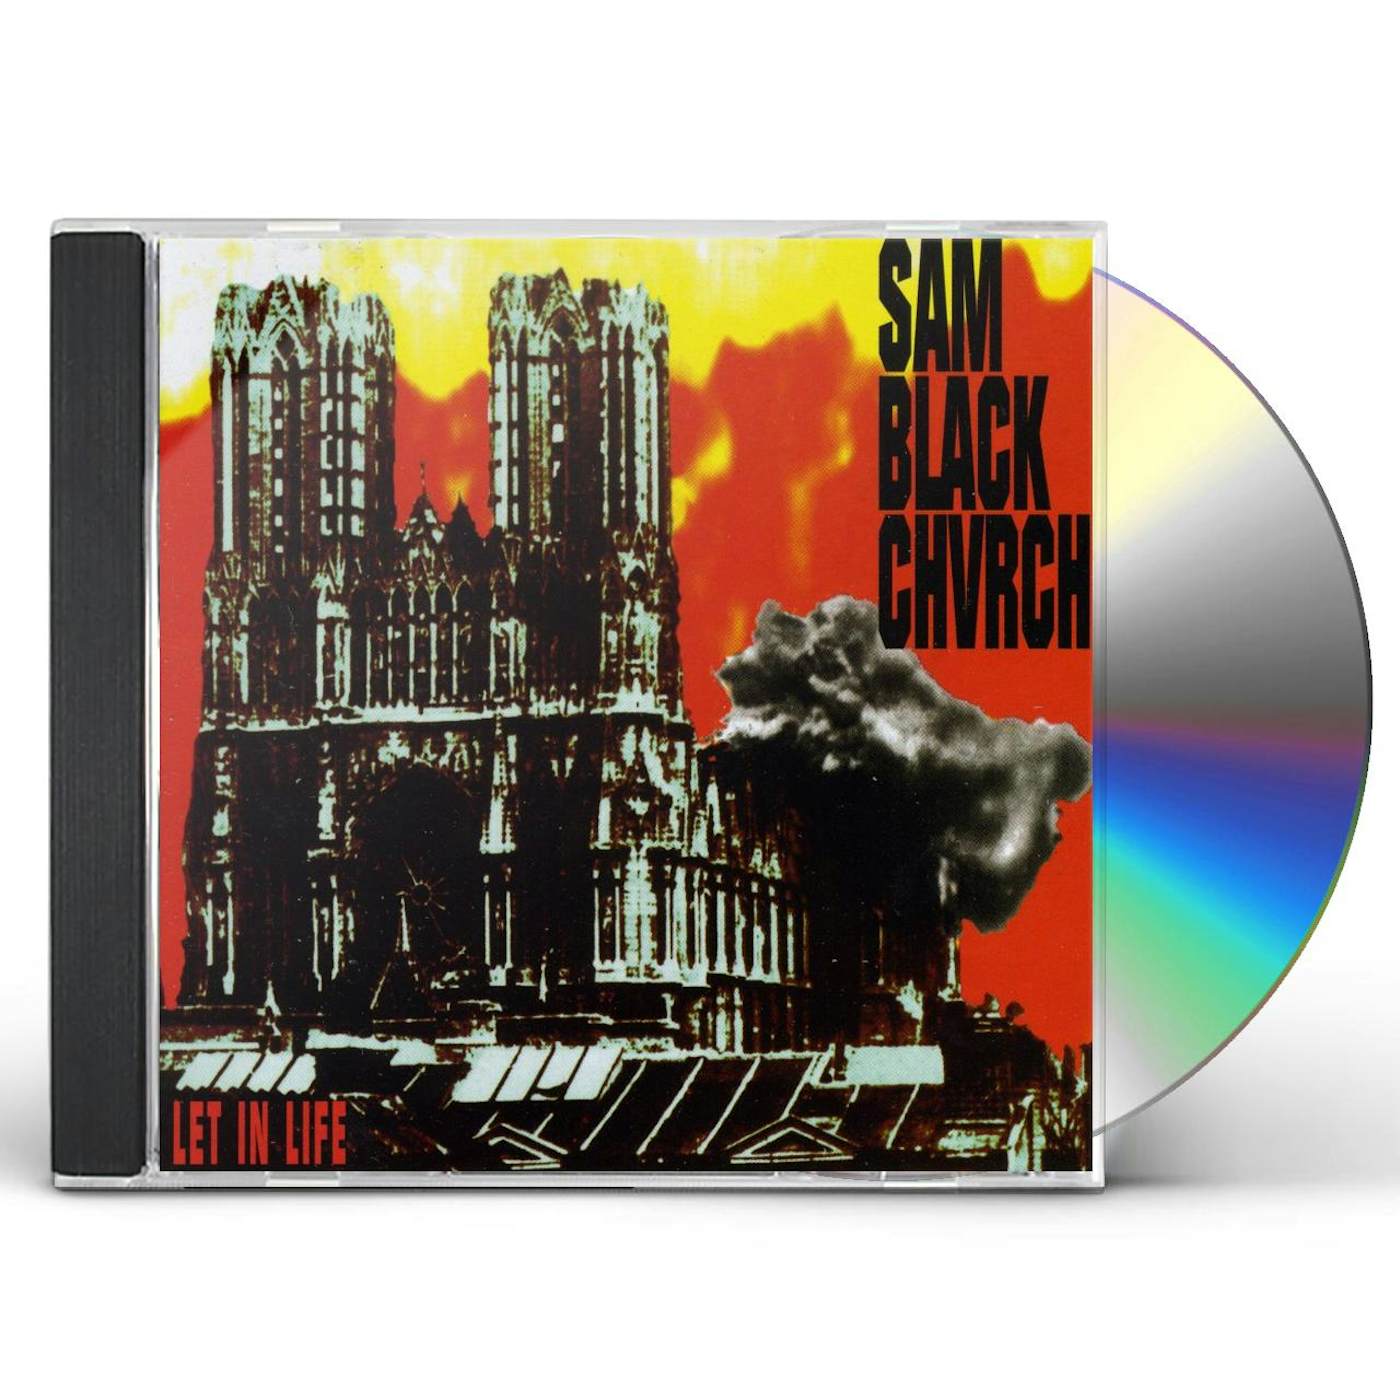 Sam Black Church LET IN LIFE CD